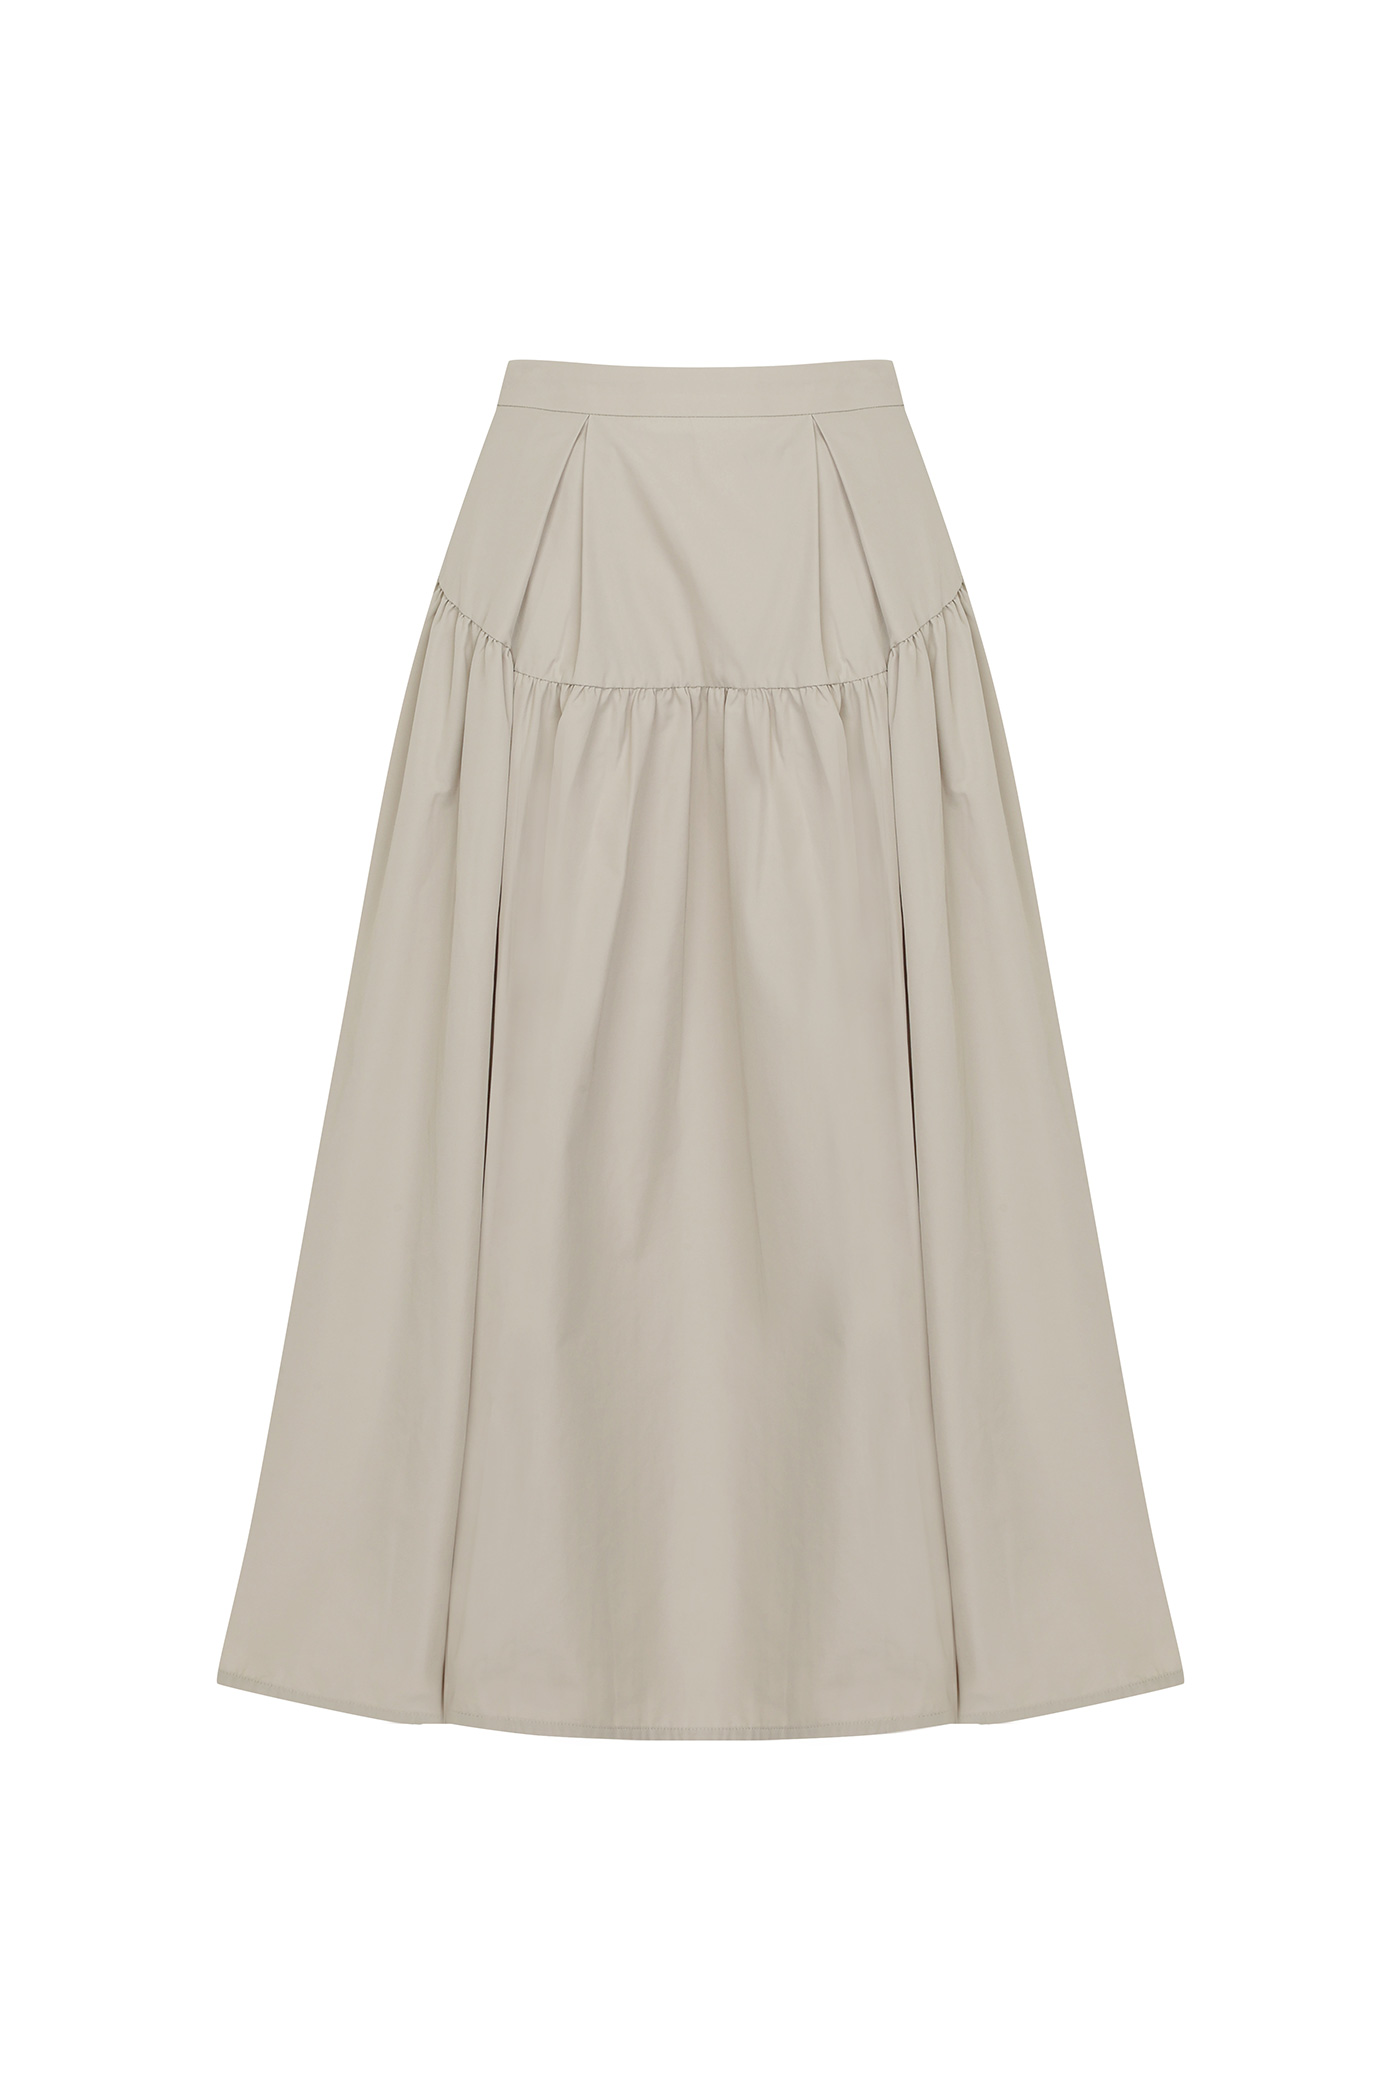 [SAMPLE]Shirring Tuxed Skirt[LMBBAUSK204]-Beige